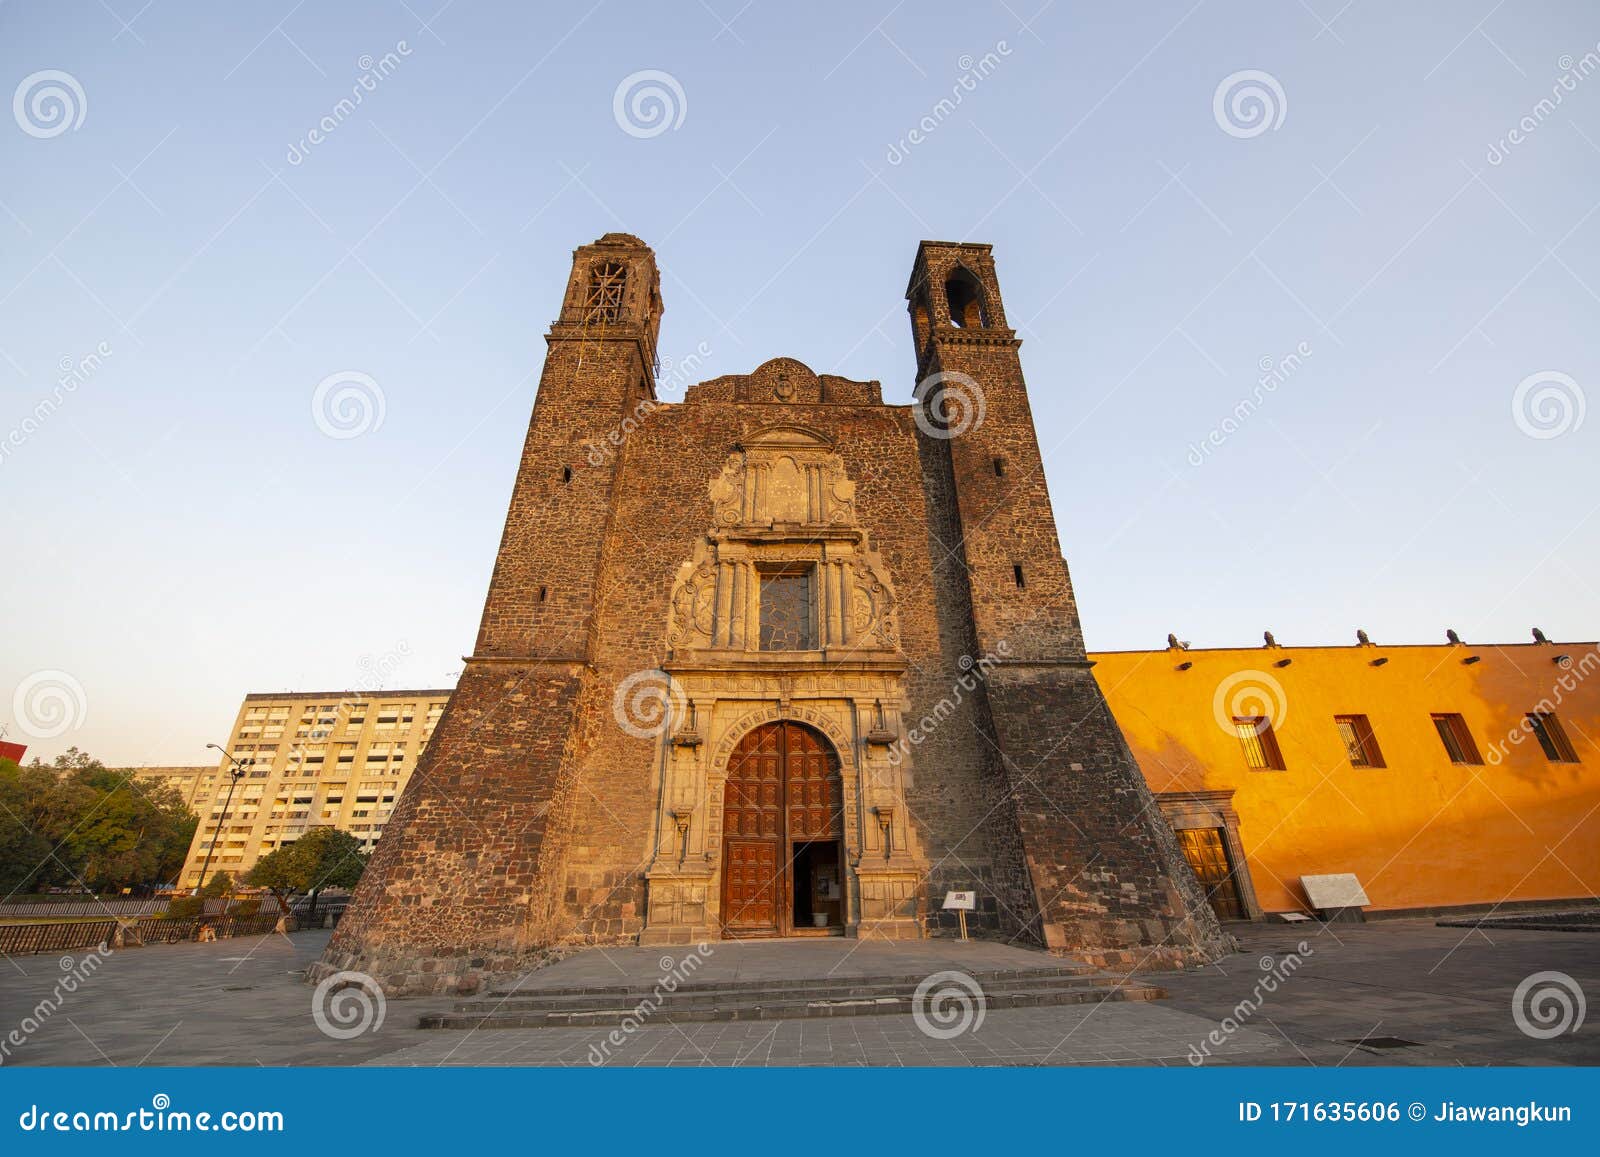 templo de santiago and tlatelolco ruin at mexico city, mexico